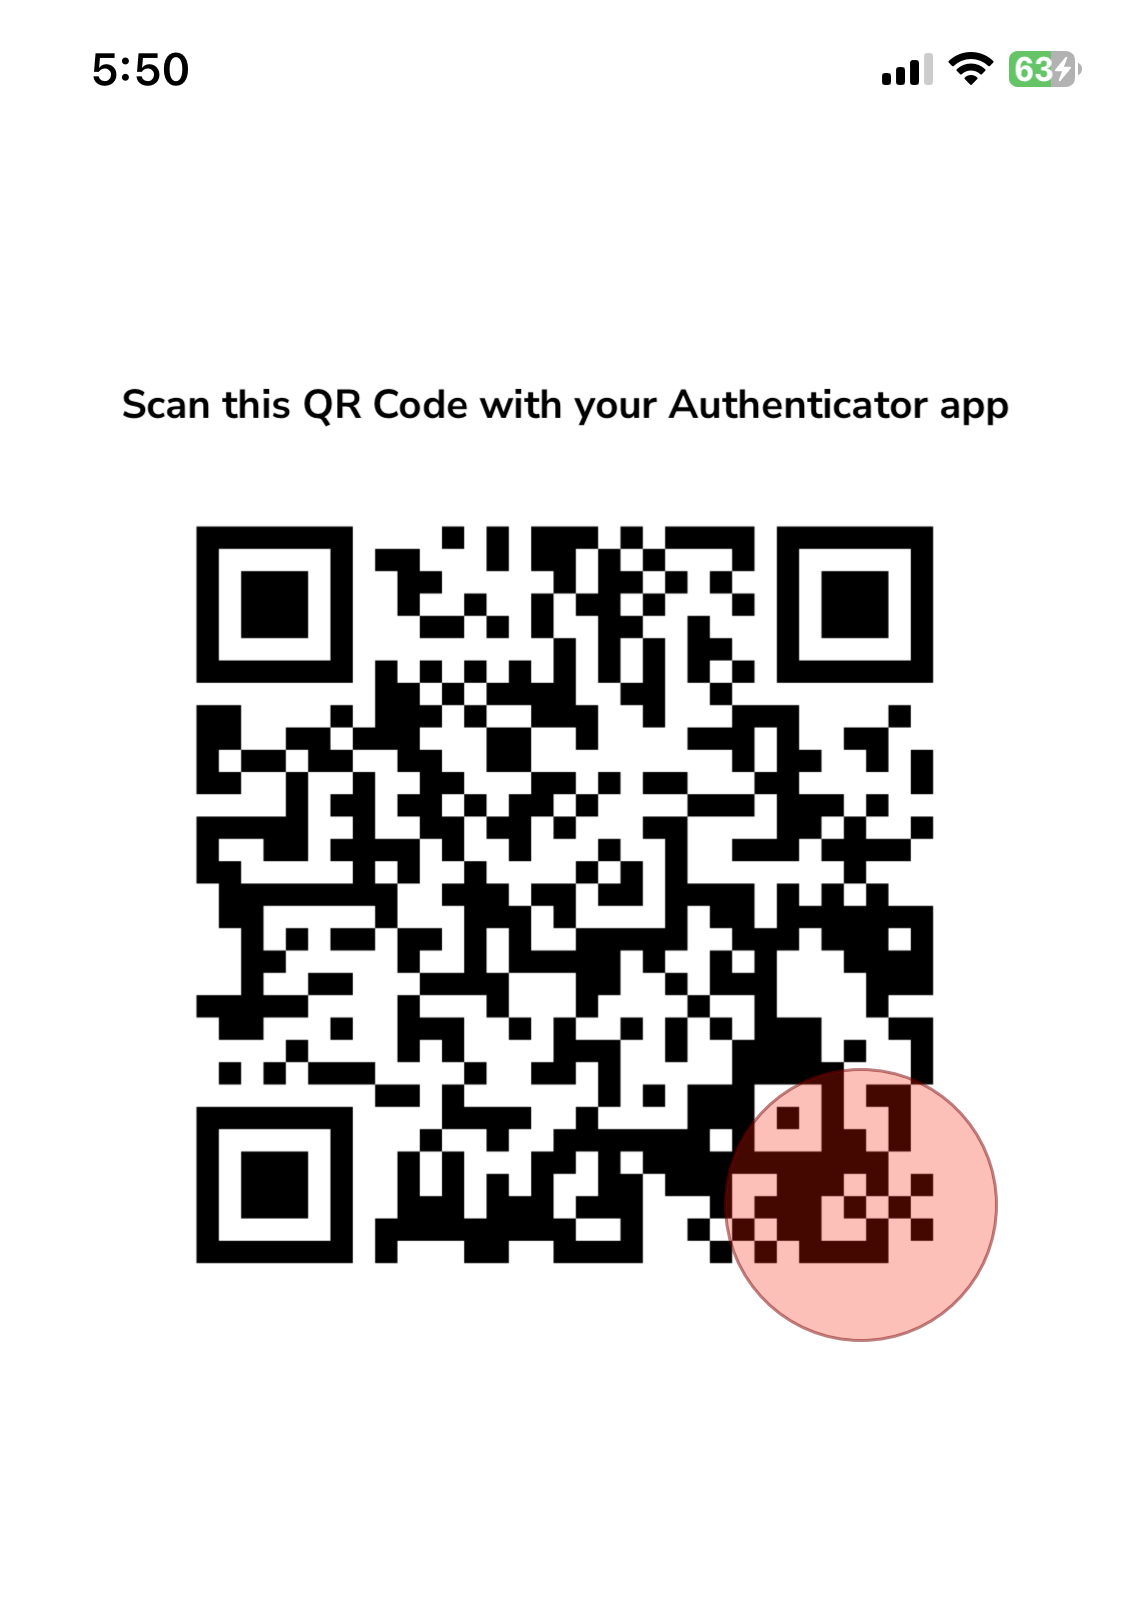 Sample Authenticator QR Code